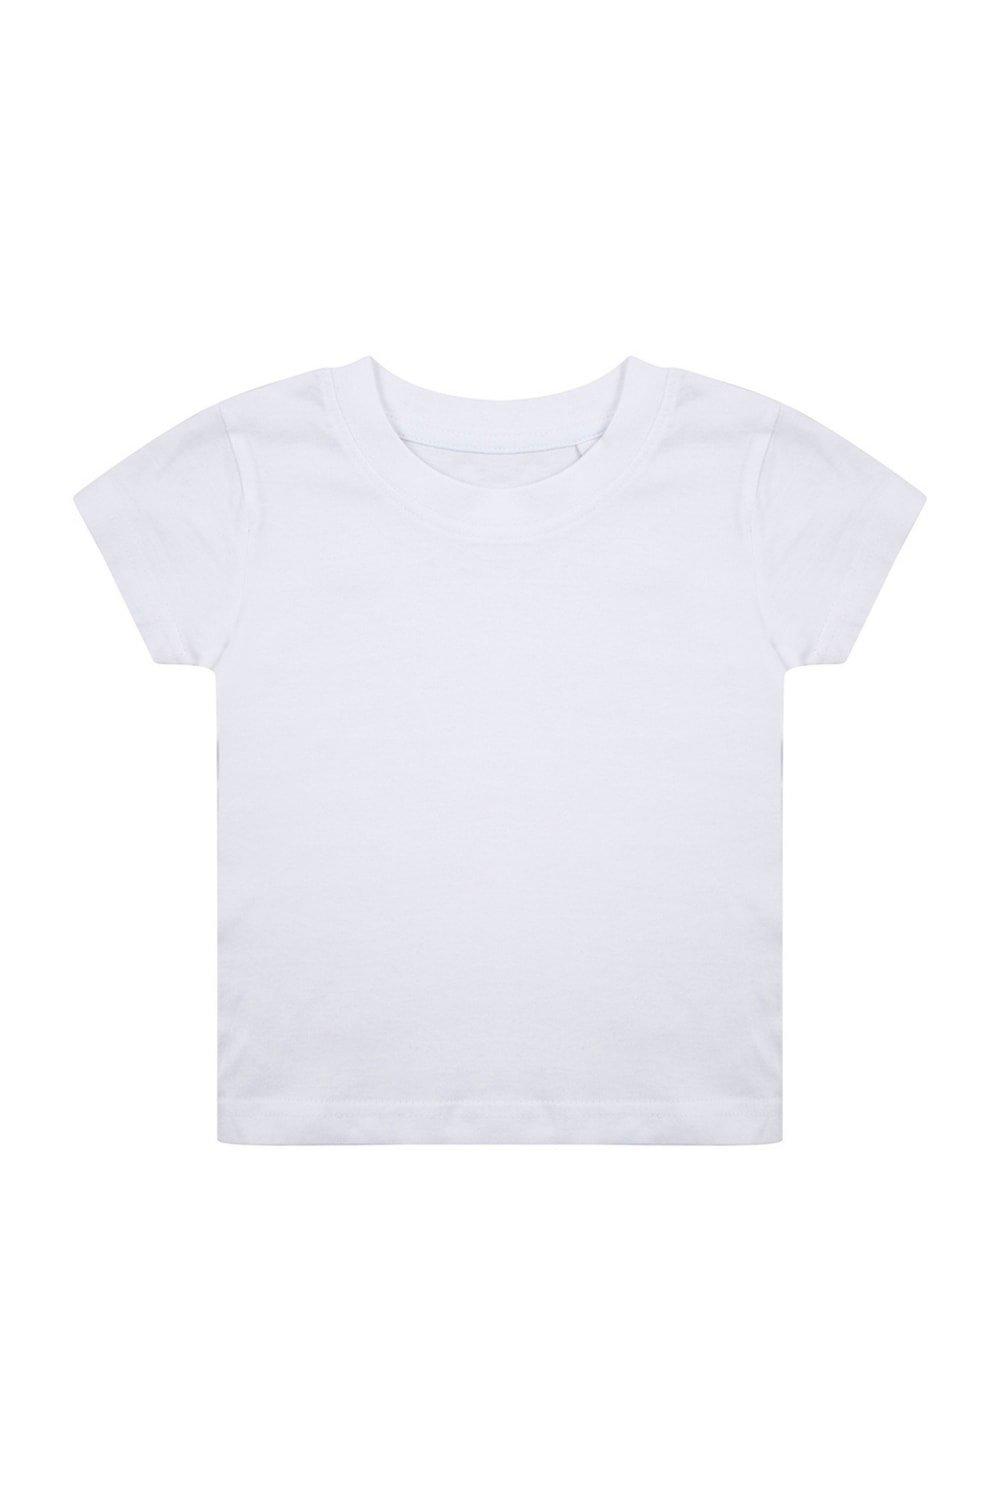 Органическая футболка Larkwood, белый фотографии